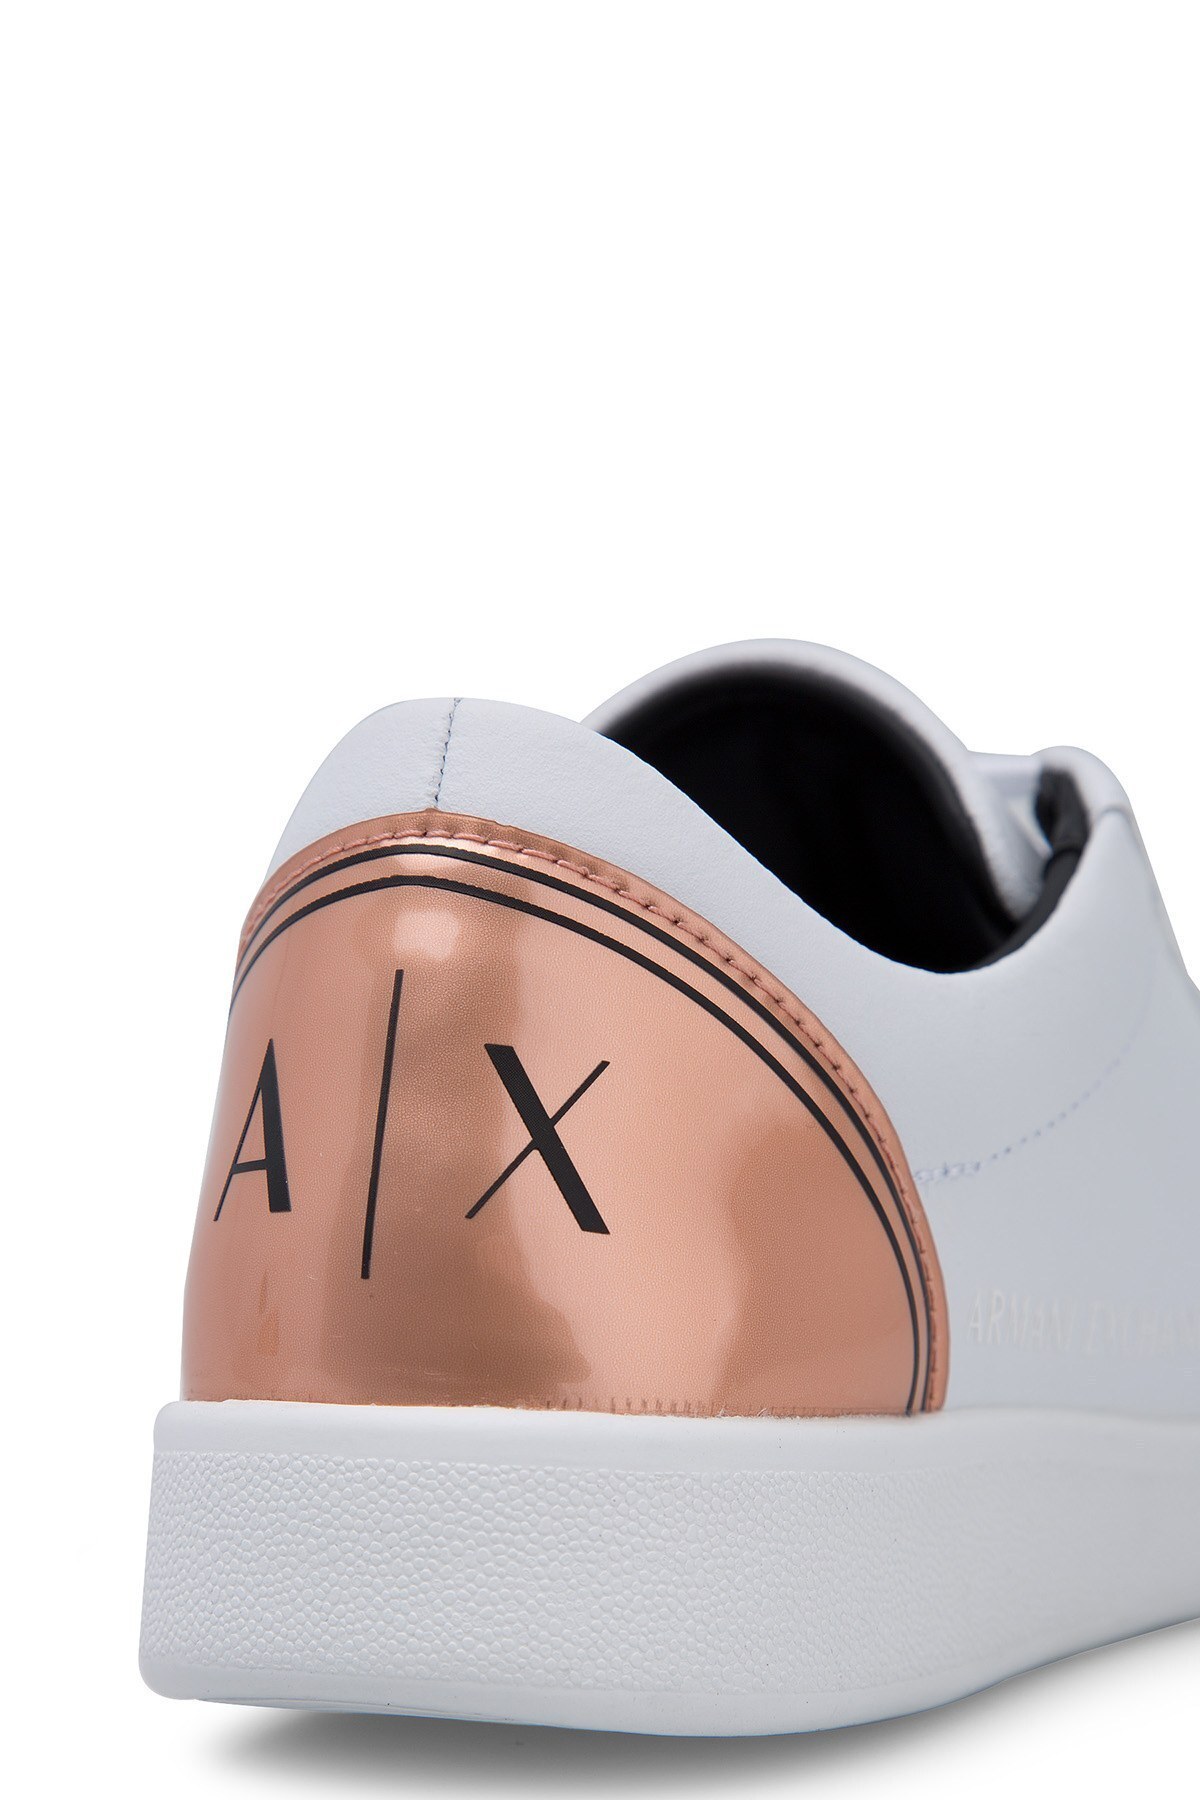 Armani Exchange Kadın Ayakkabı XDX034 XV162 N862 BEYAZ